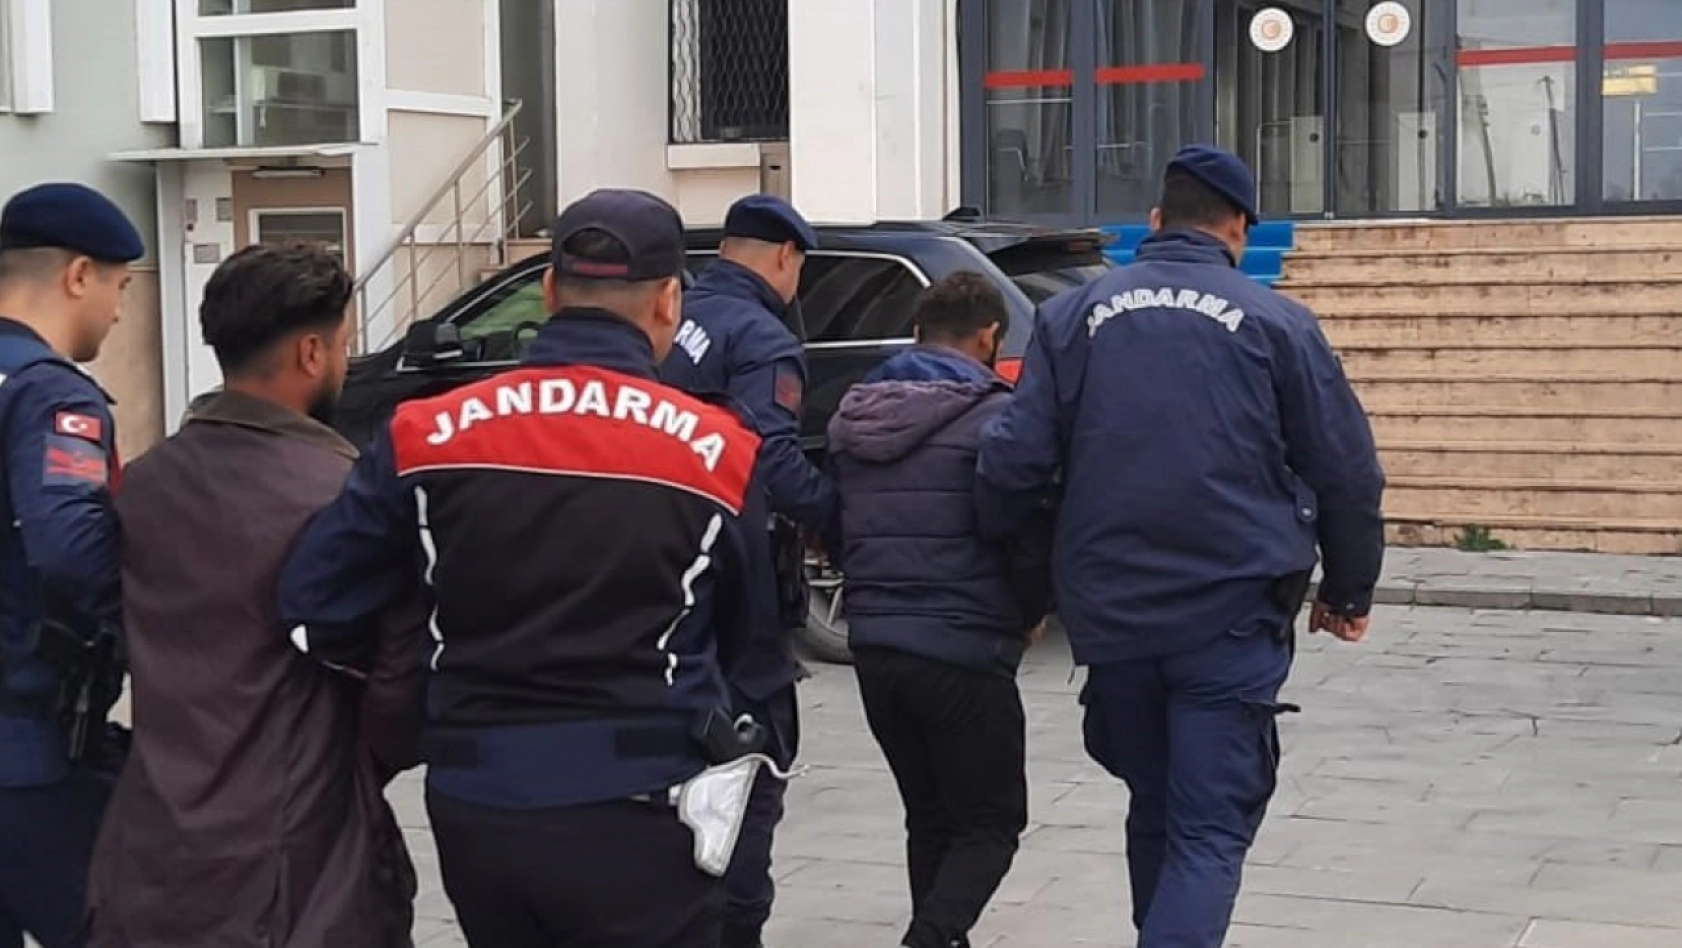 Malatya'da terör operasyonları: 2 tutuklama